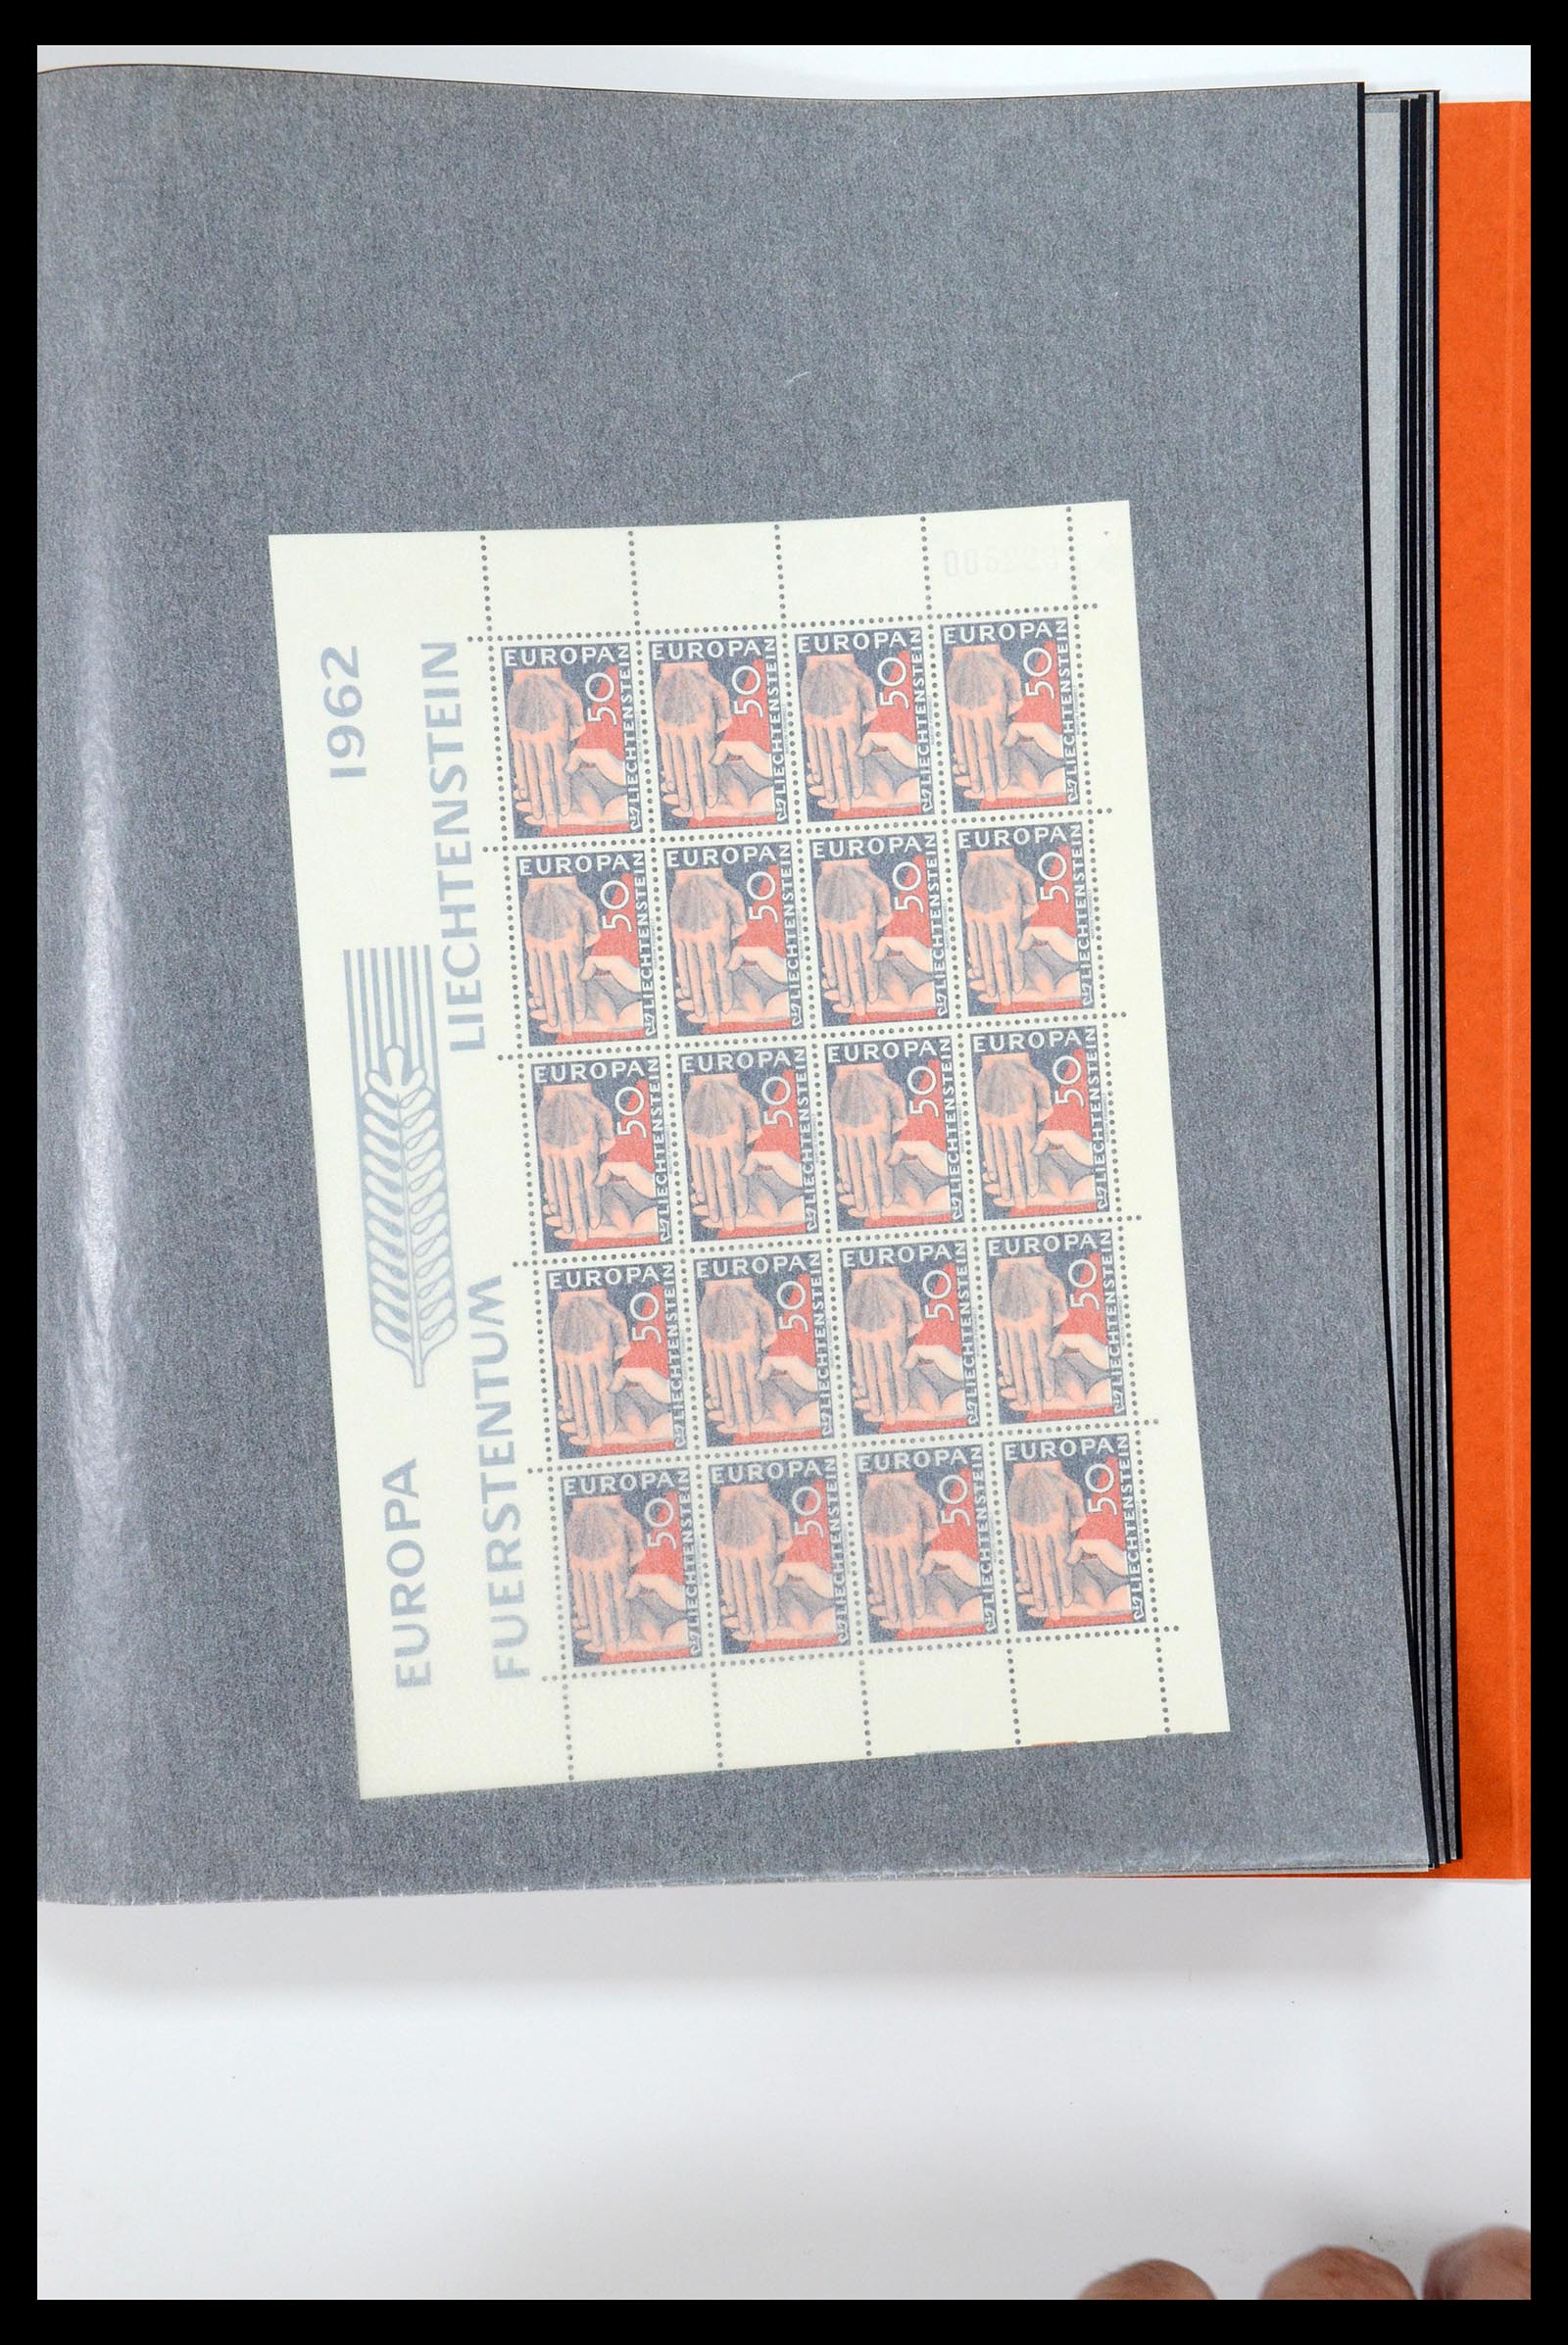 36280 202 - Stamp collection 36280 Liechtenstein souvenir sheets and sheetlets 1934-